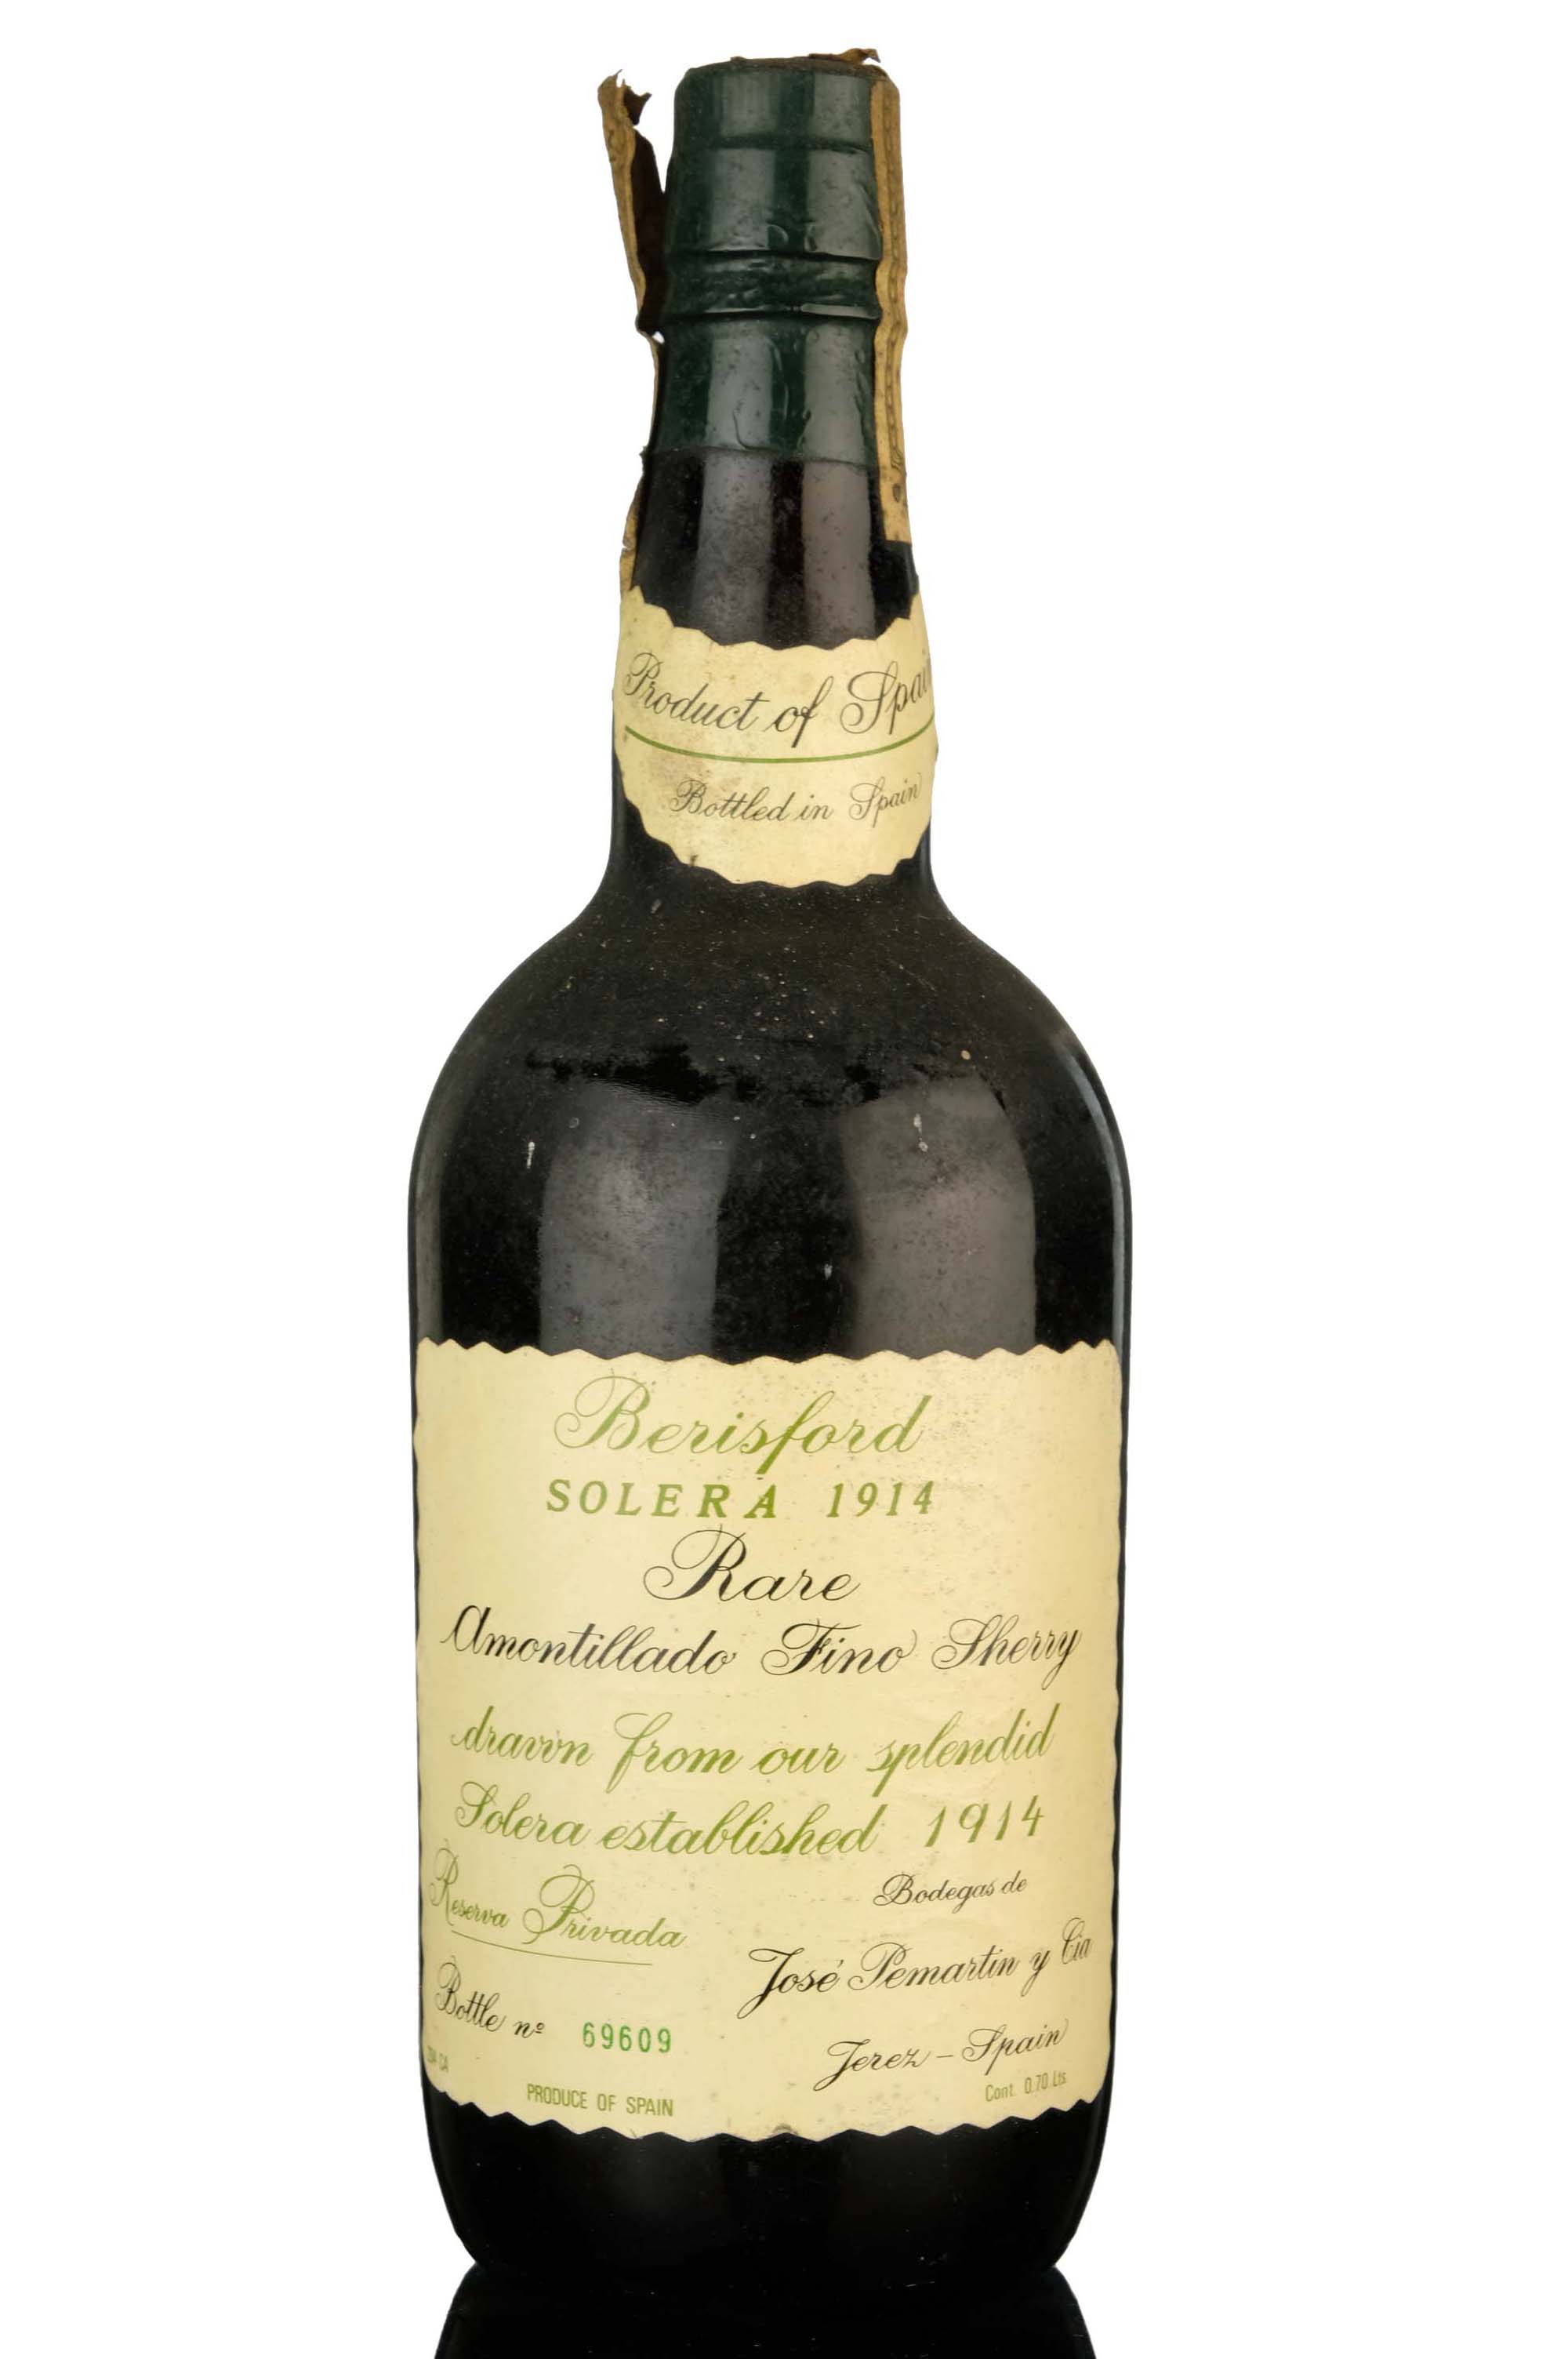 Berisford Solera 1914 Amontillado Fino Sherry - 1970s